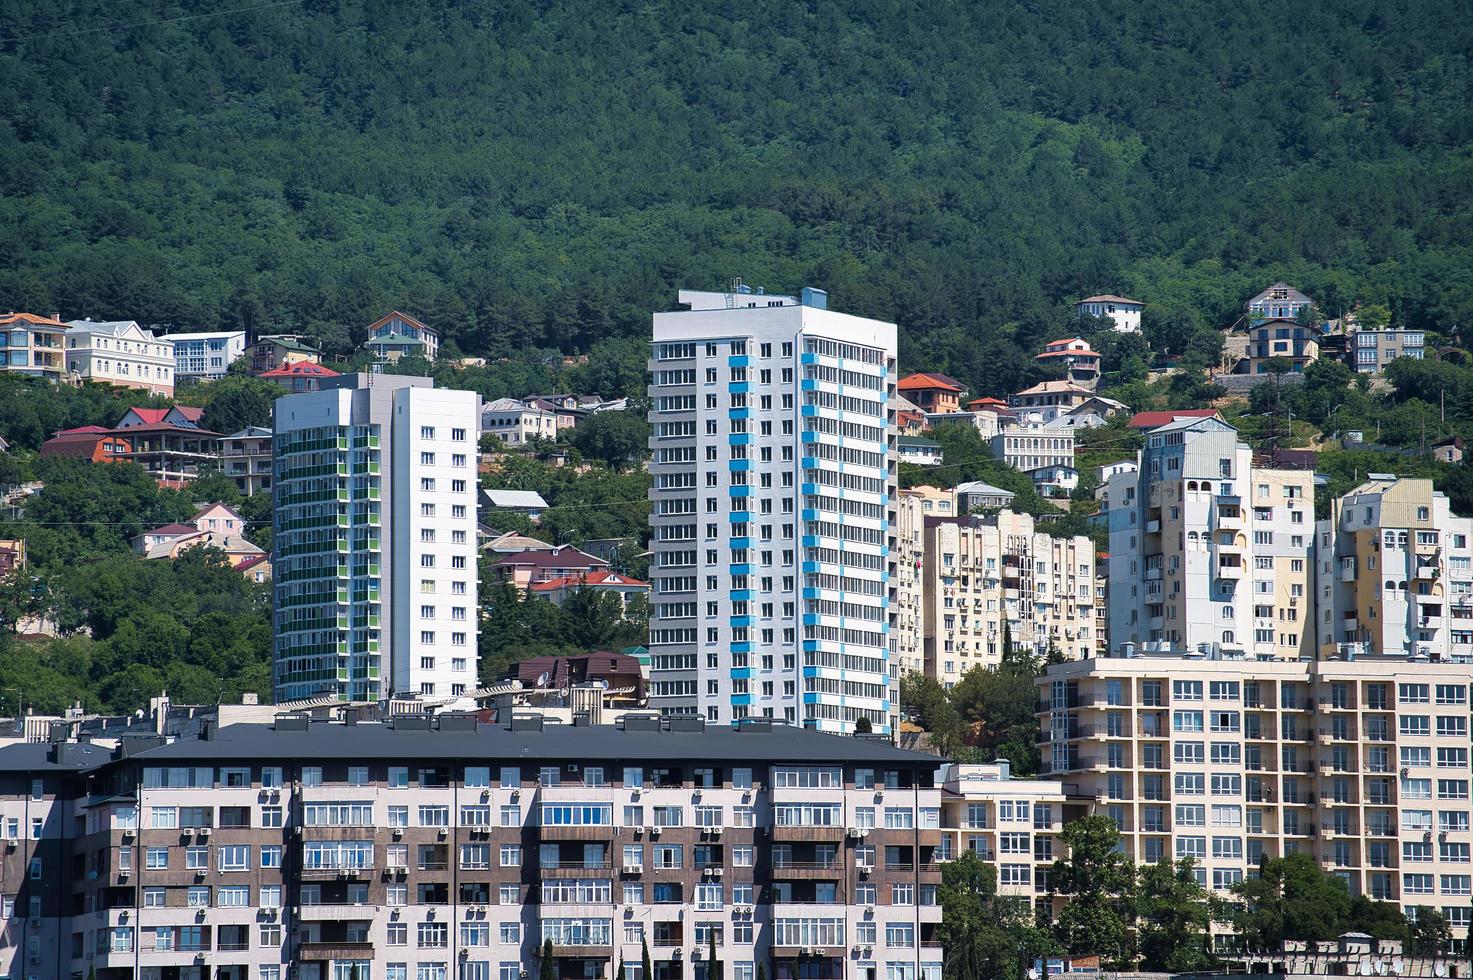 paesaggio della città con vista sugli edifici di yalta, crimea foto